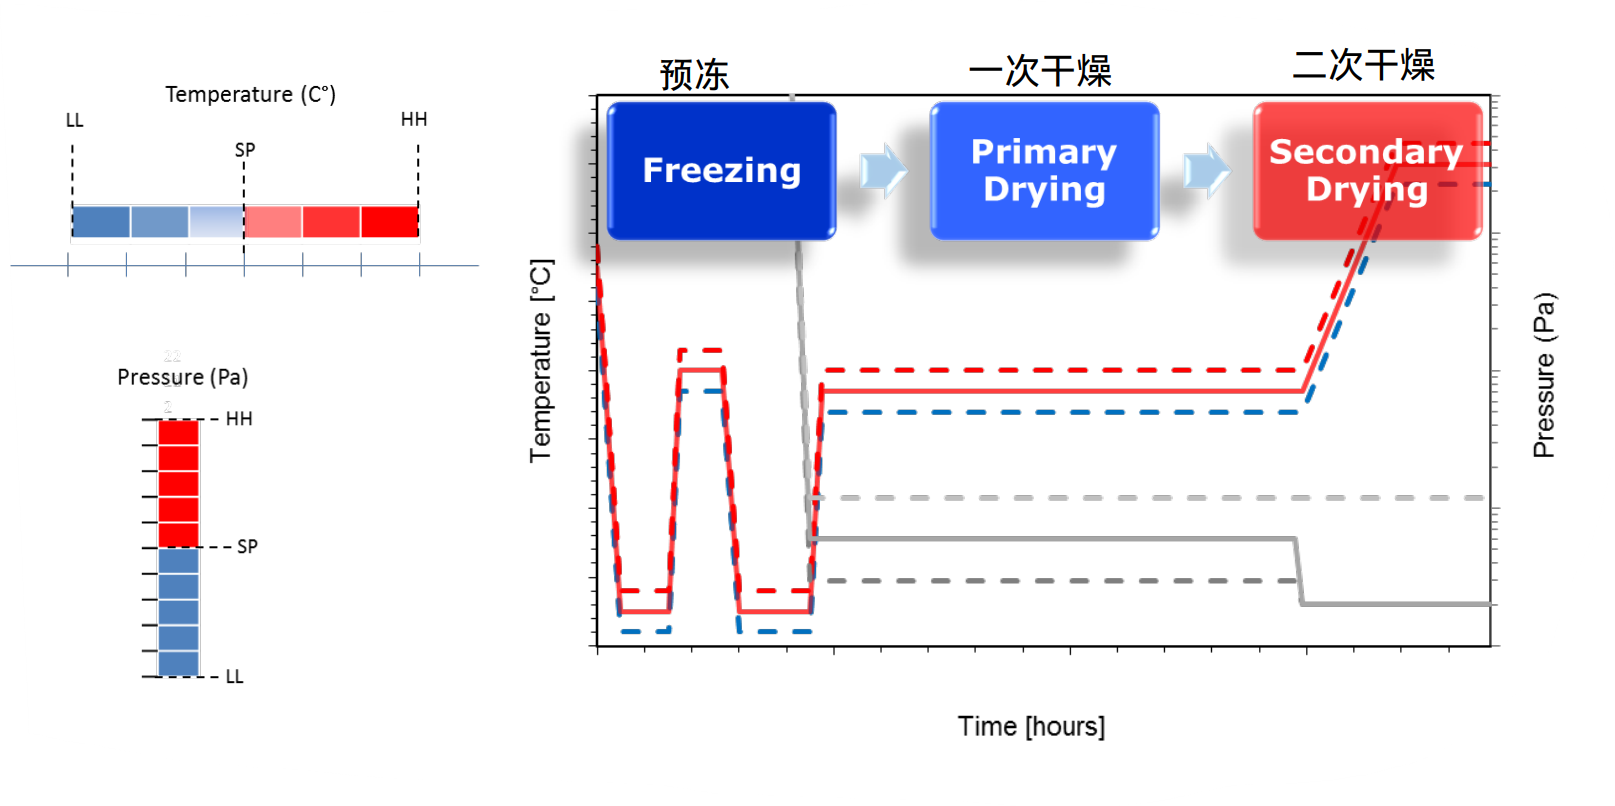 k1体育分享 | 温度边缘效应对冻干成品含水量的影响（上）——原理和现象